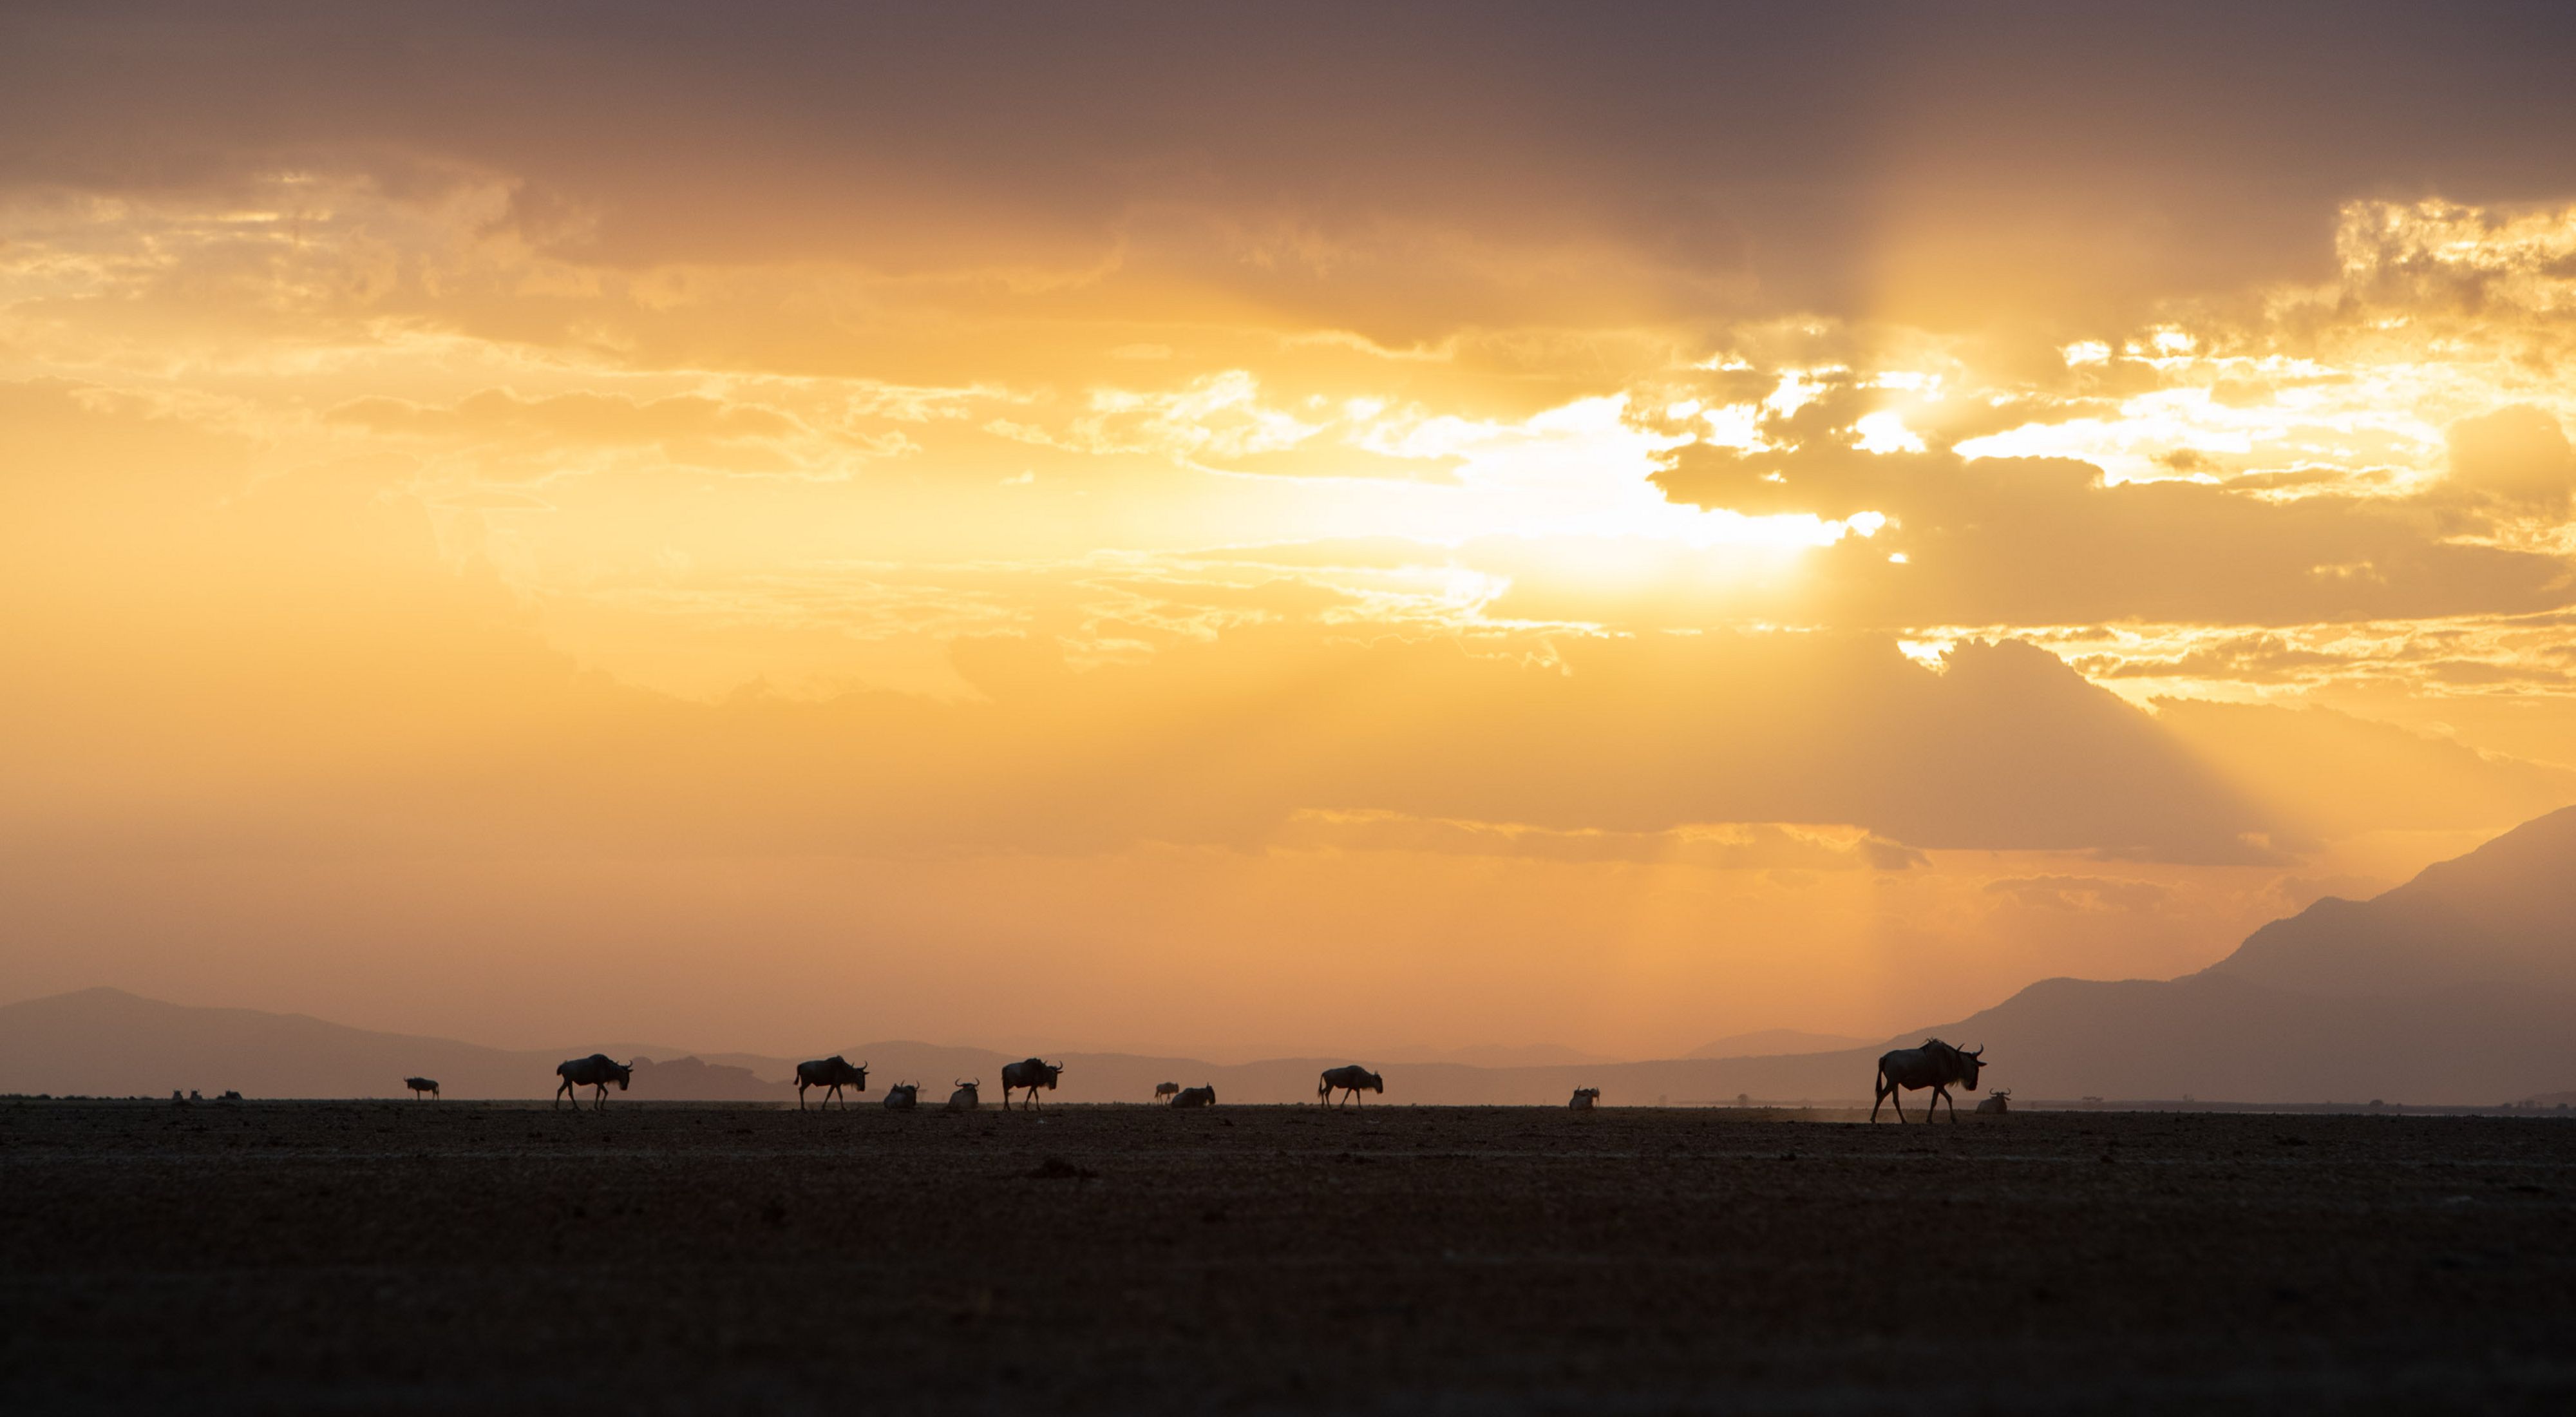 A running herd of wildebeest